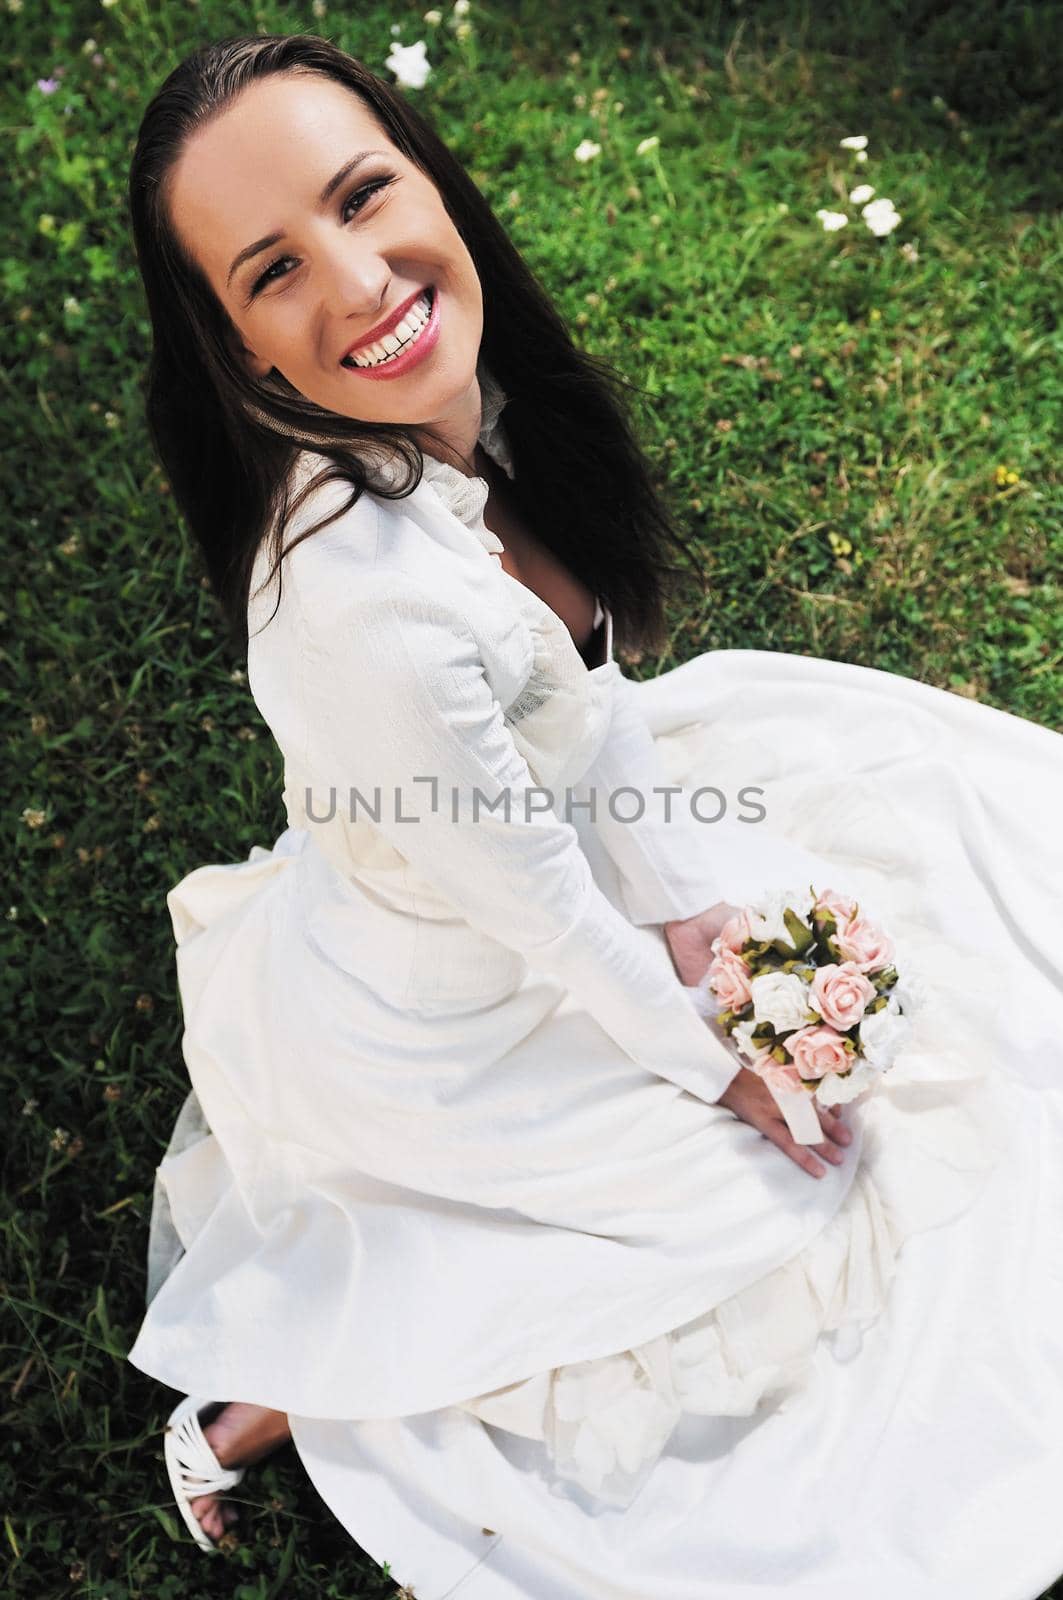 beautiful bride outdoor after wedding ceremny by dotshock